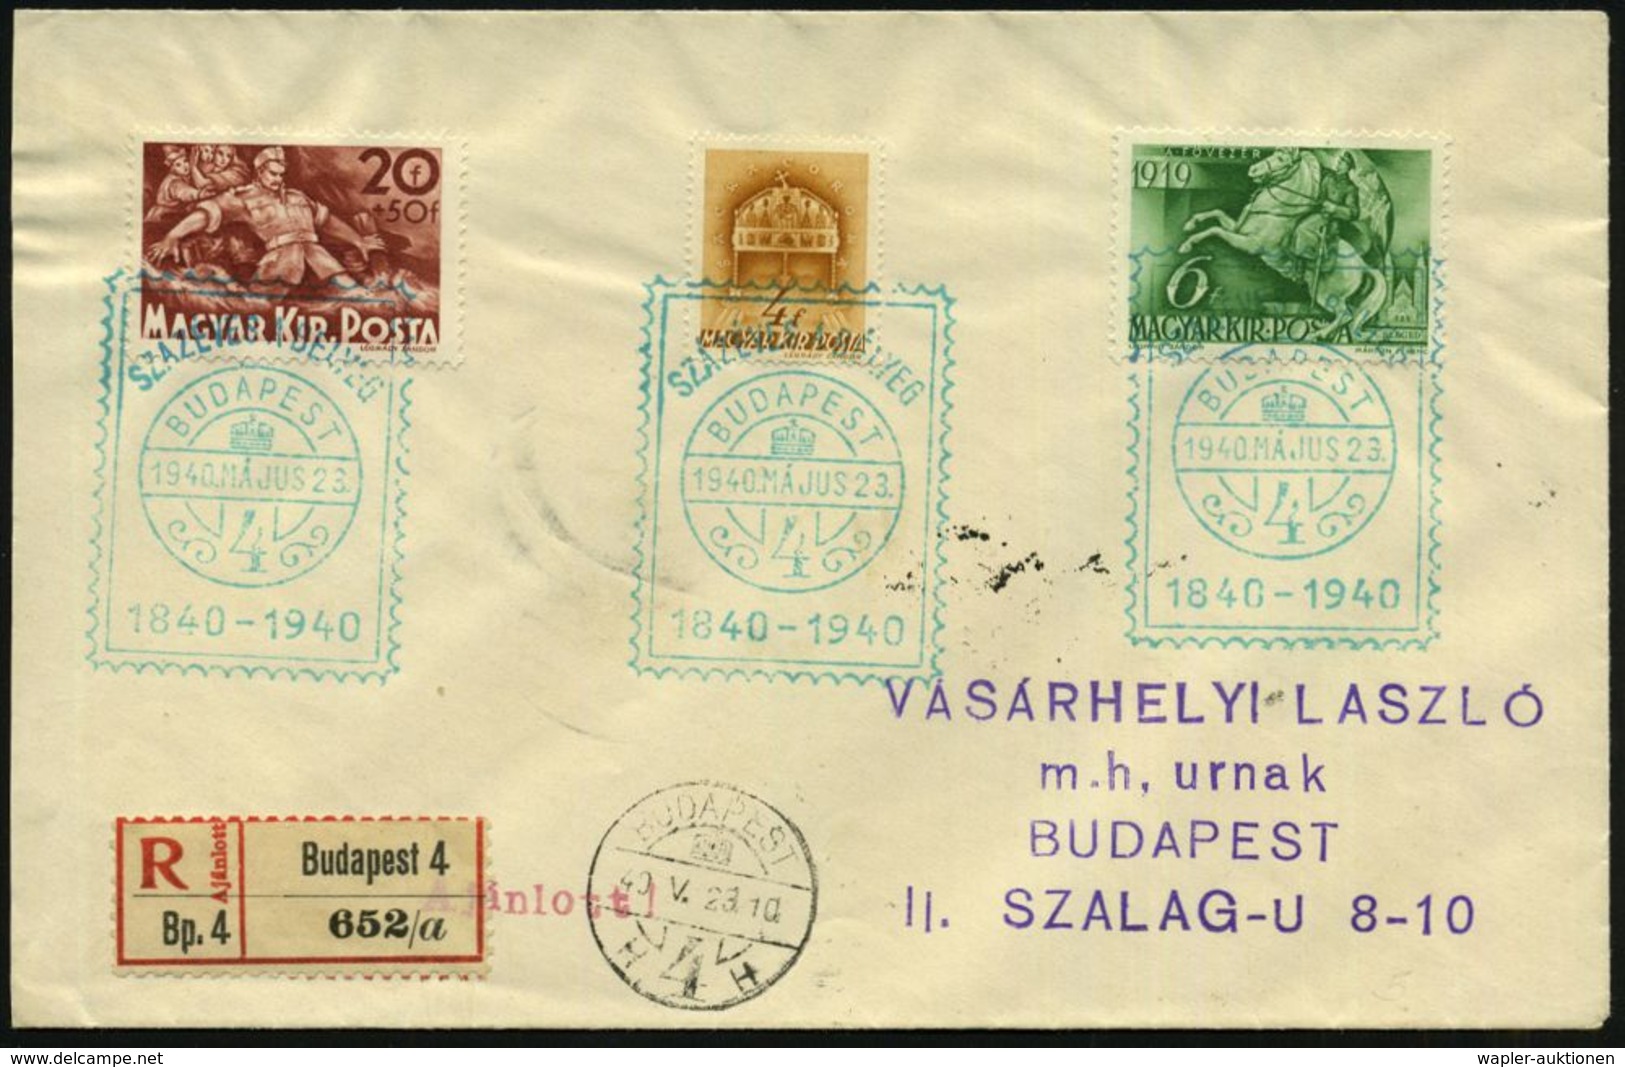 UNGARN 1940 (23.5.) Grüner SSt.: BUDAPEST/4/SZAZEVES A BELYEG/1840 - 1940 = 100 Jahre Britische Briefmarke (Markenimitat - Expositions Philatéliques